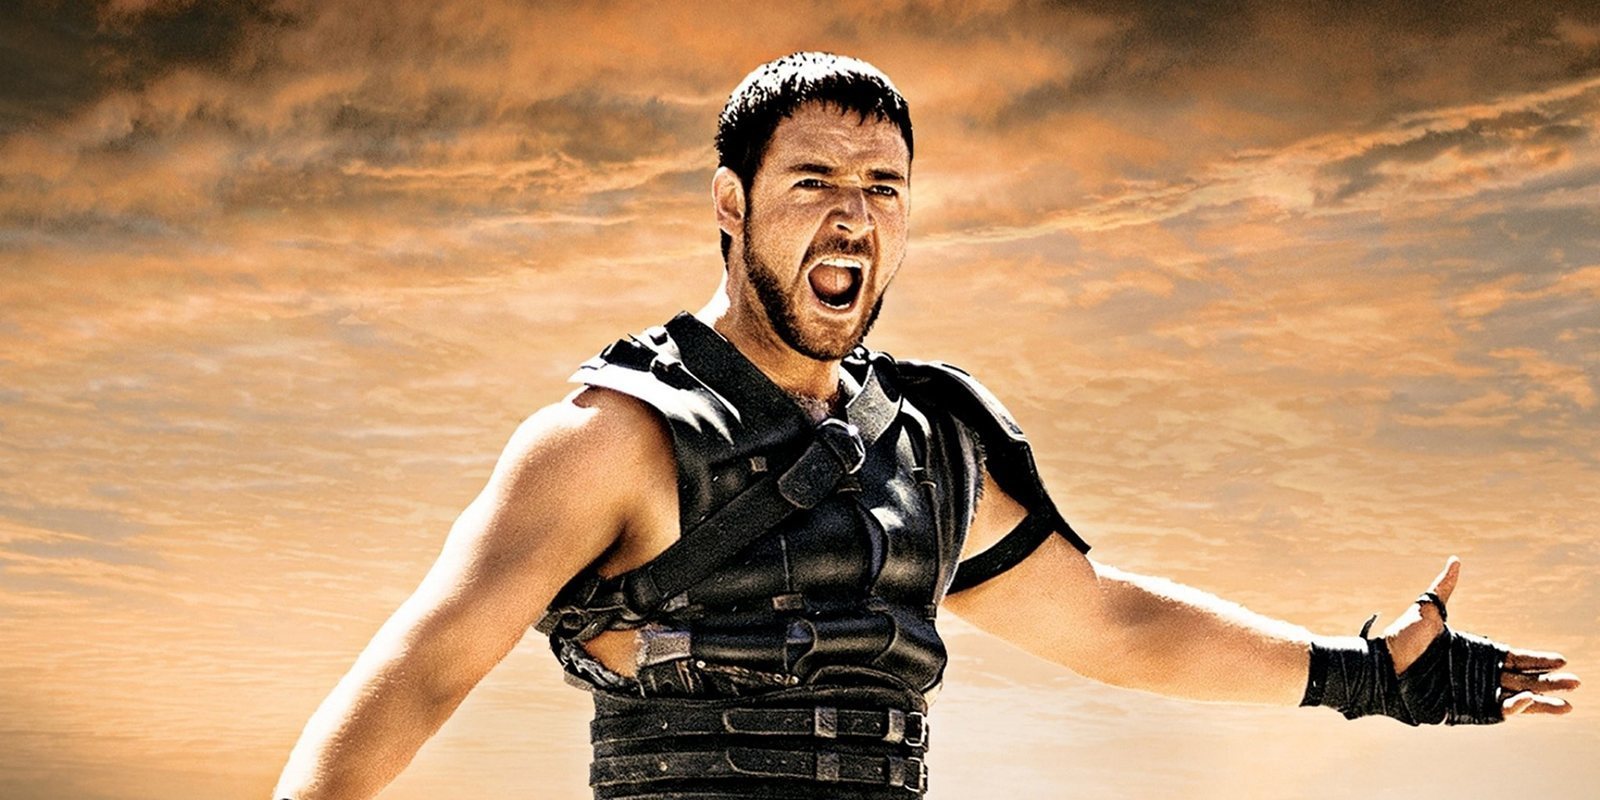 Russell Crowe presenta una proyección benéfica de 'Gladiator' en el Coliseo de Roma